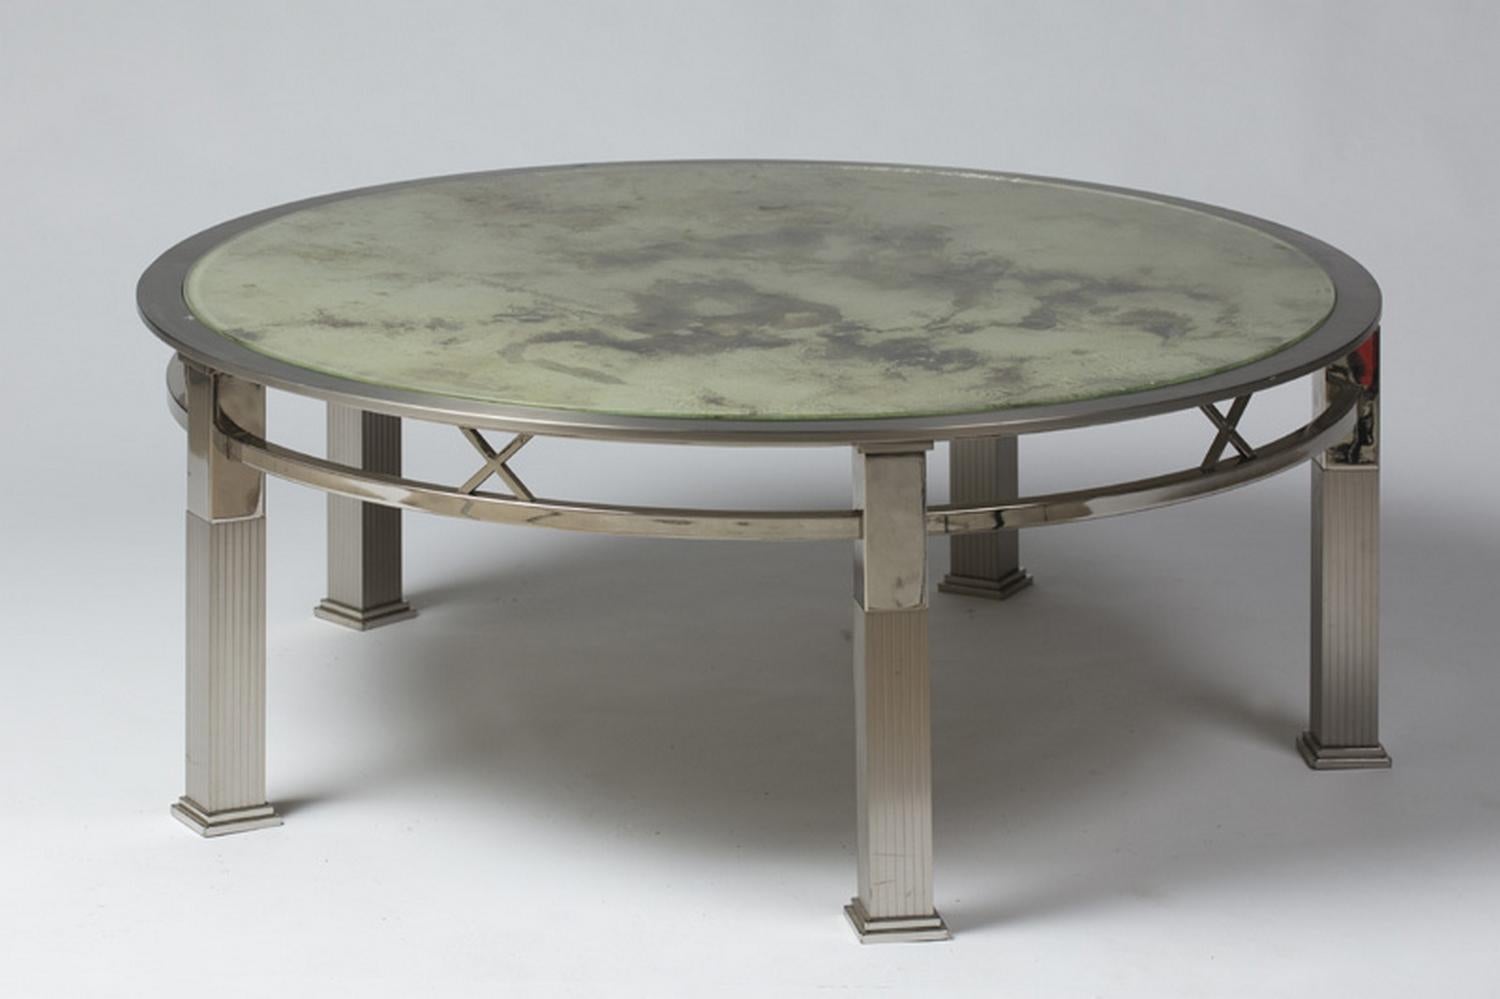 Table basse ronde en métal chromé et verre travaillé à l'acide, France, période 1970.
Un travail de qualité, dans l'esprit de la Maison Jansen.

   